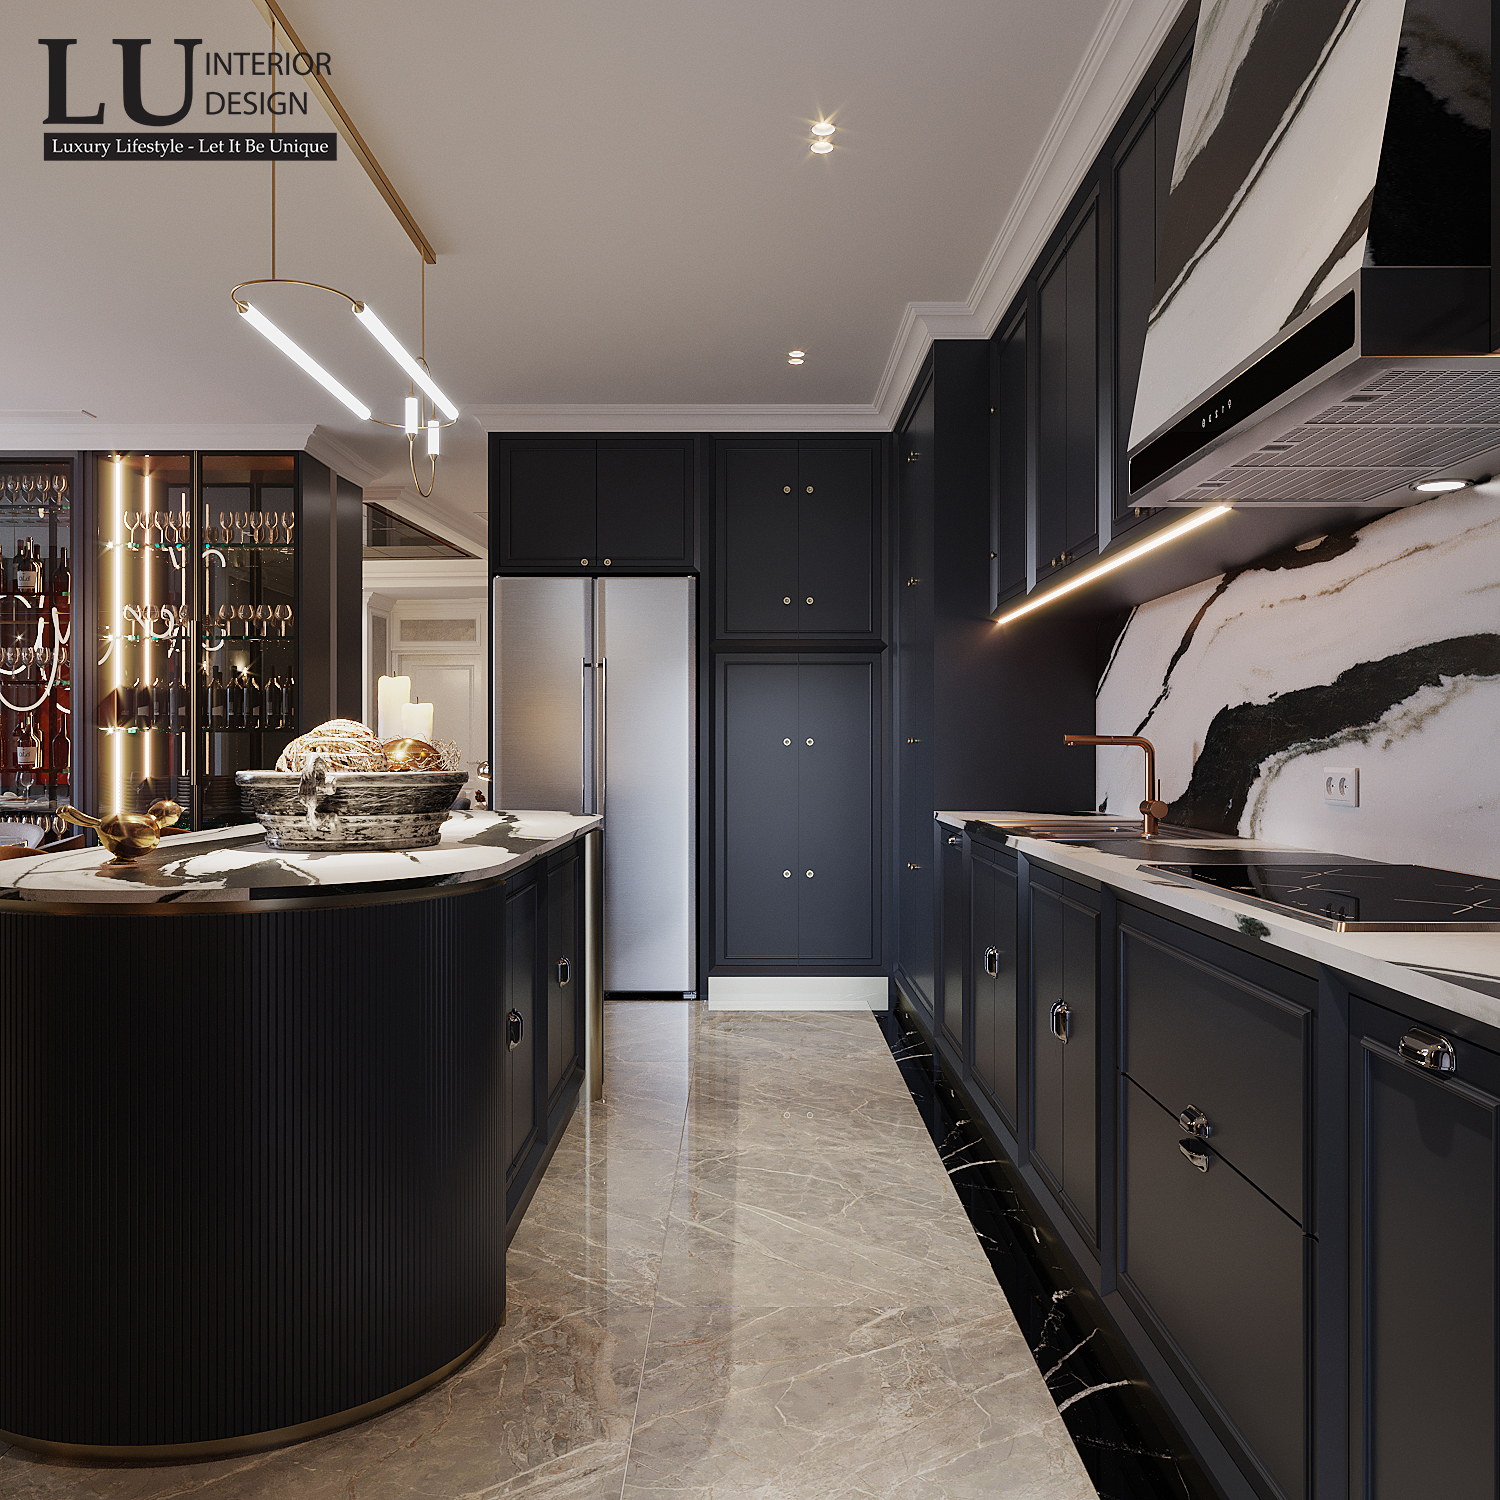 Phong cách tương phản được xen kẽ xuyên suốt từng góc bếp. Kệ và tủ sử dụng tone màu tối sạch sẽ, điểm nhấn là phần gạch ốp tường marble đen trắng tạo nên cảm giác sang trọng gọn gàng cho khu bếp. 